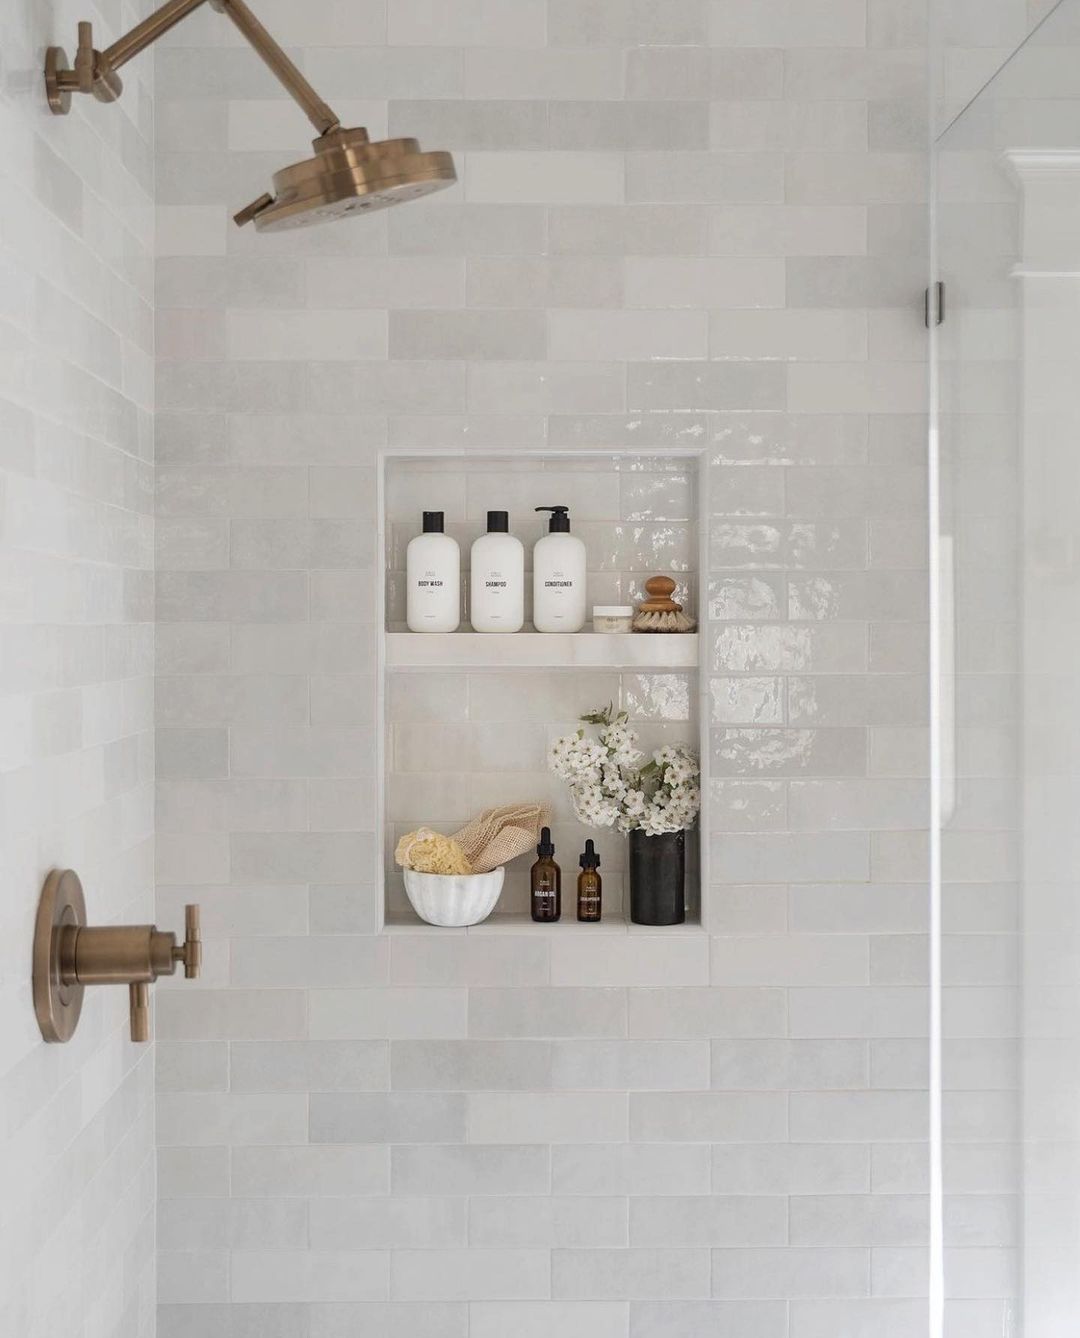 Shelf indentation in a shower